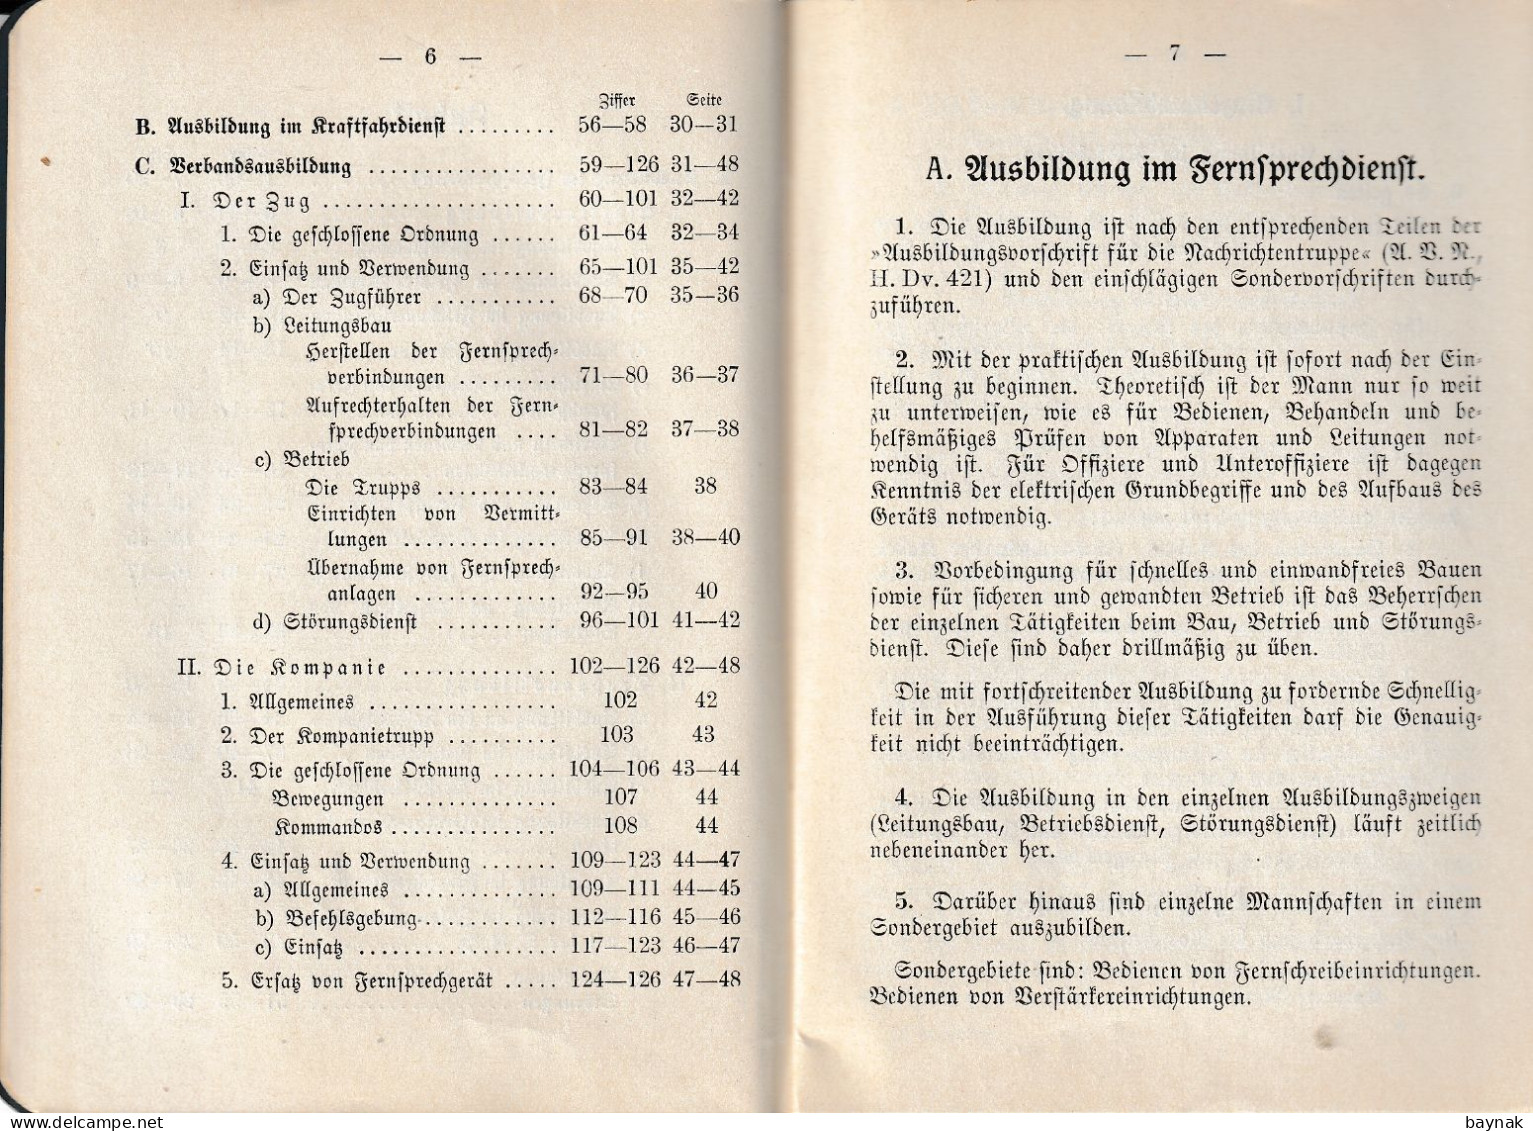 THIRD REICH  -  AUSBILDUNGSVORSCHRIFT FUR DIE NACHRICHTENTRUPPE  --  DIE FERNSPRECHKOMPANIE ( Schau: AbeBooks - 1939-45